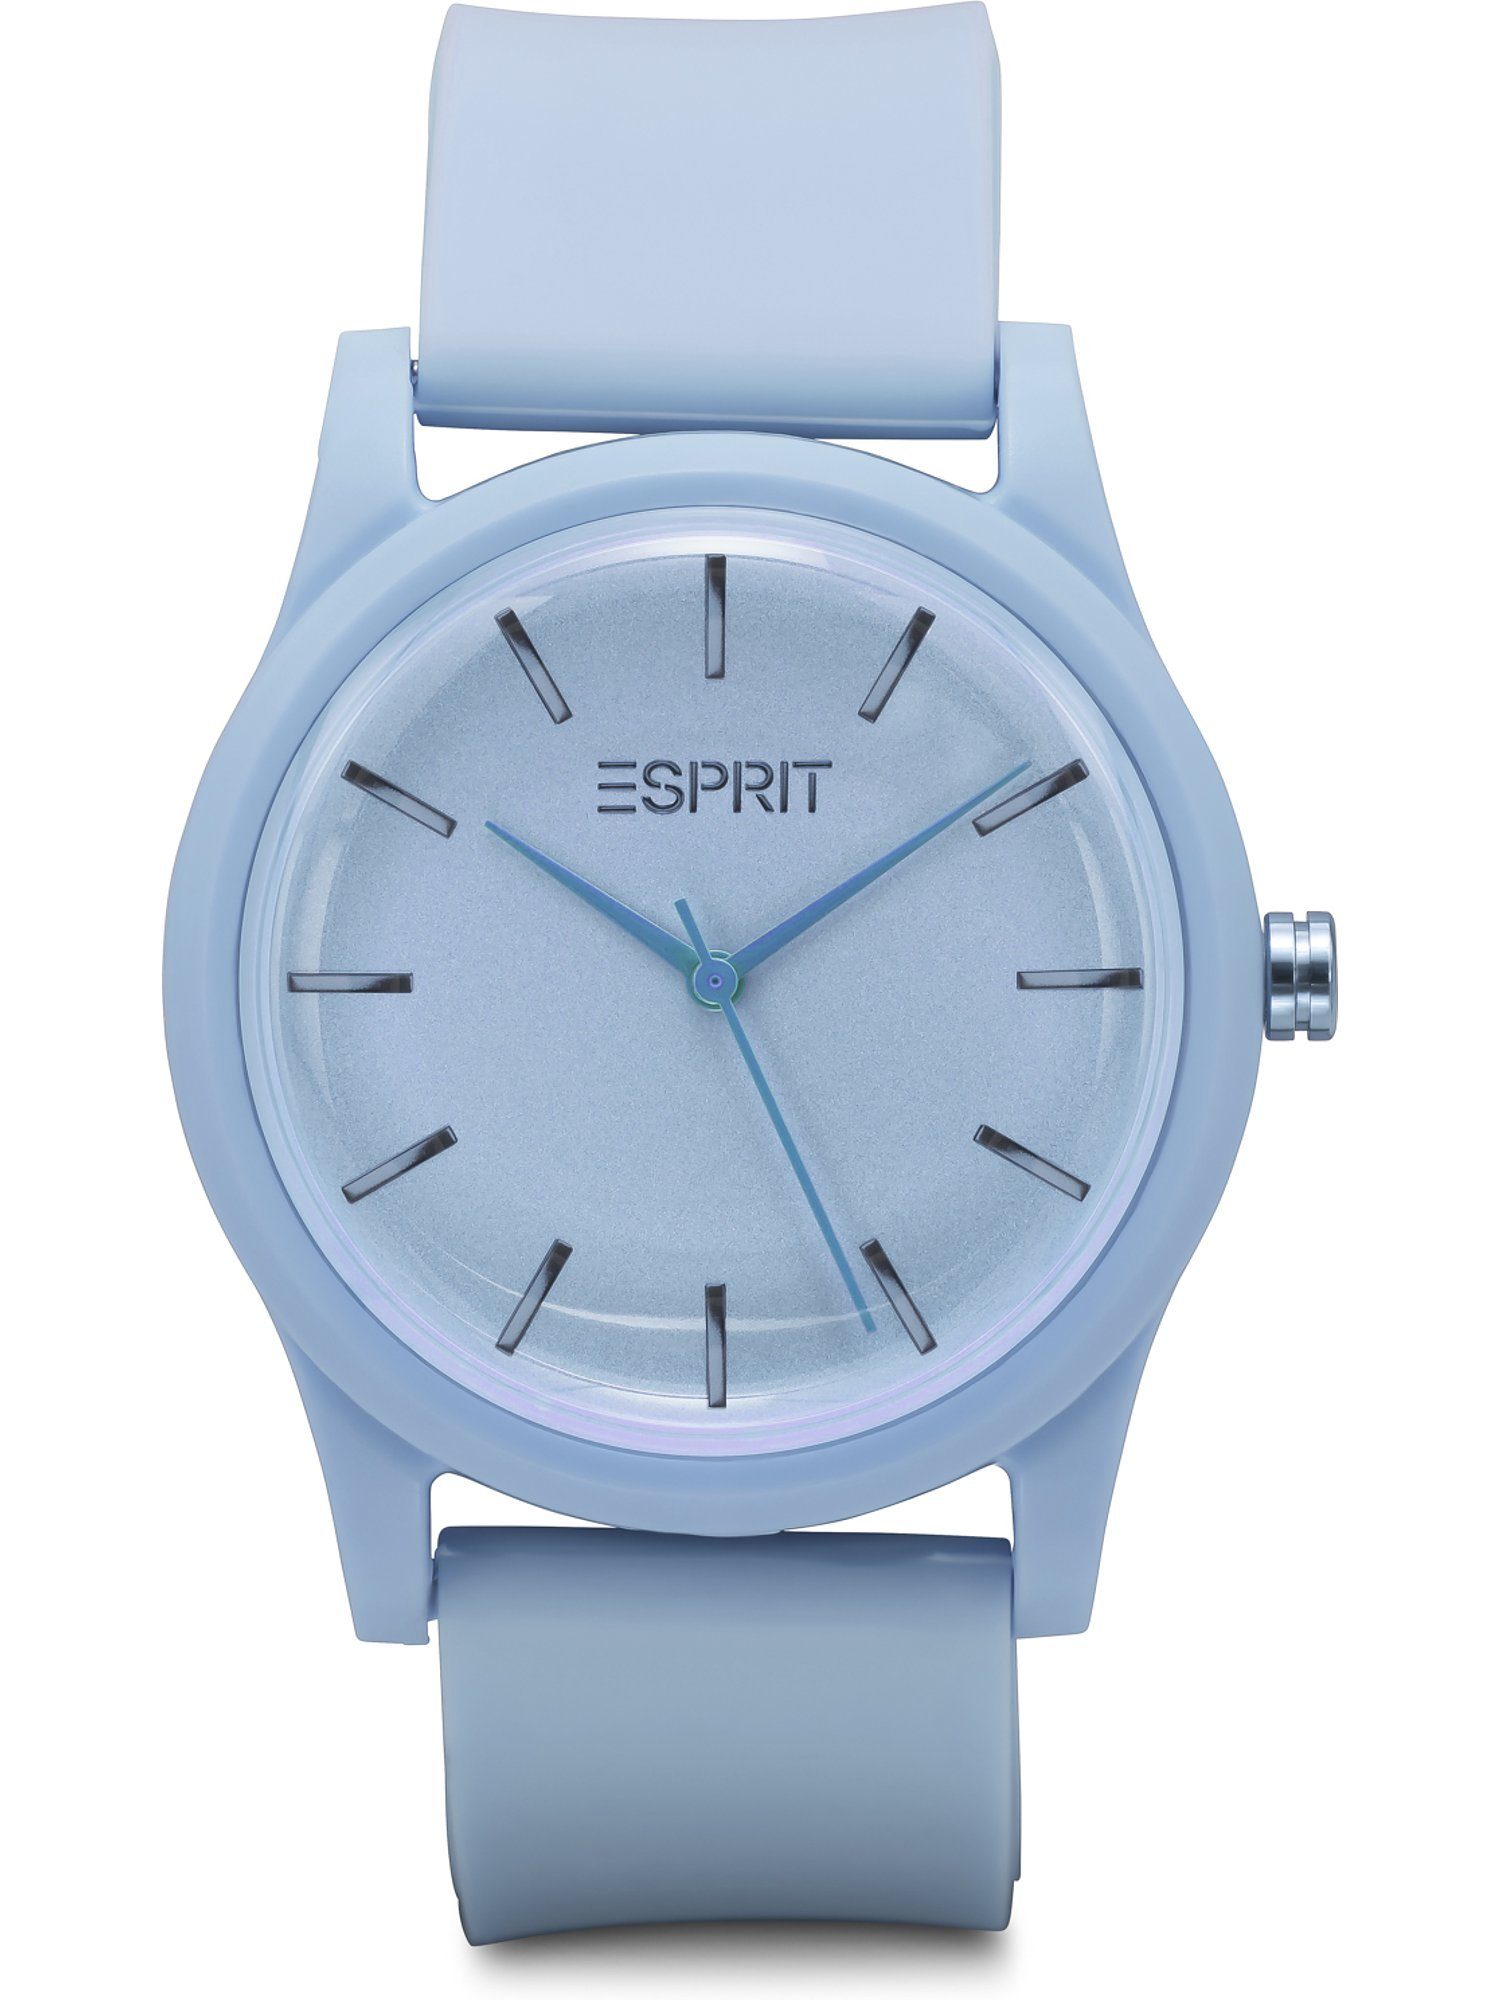 Esprit Quarzuhr ESPRIT Unisex-Uhren Analog Quarz, Klassikuhr